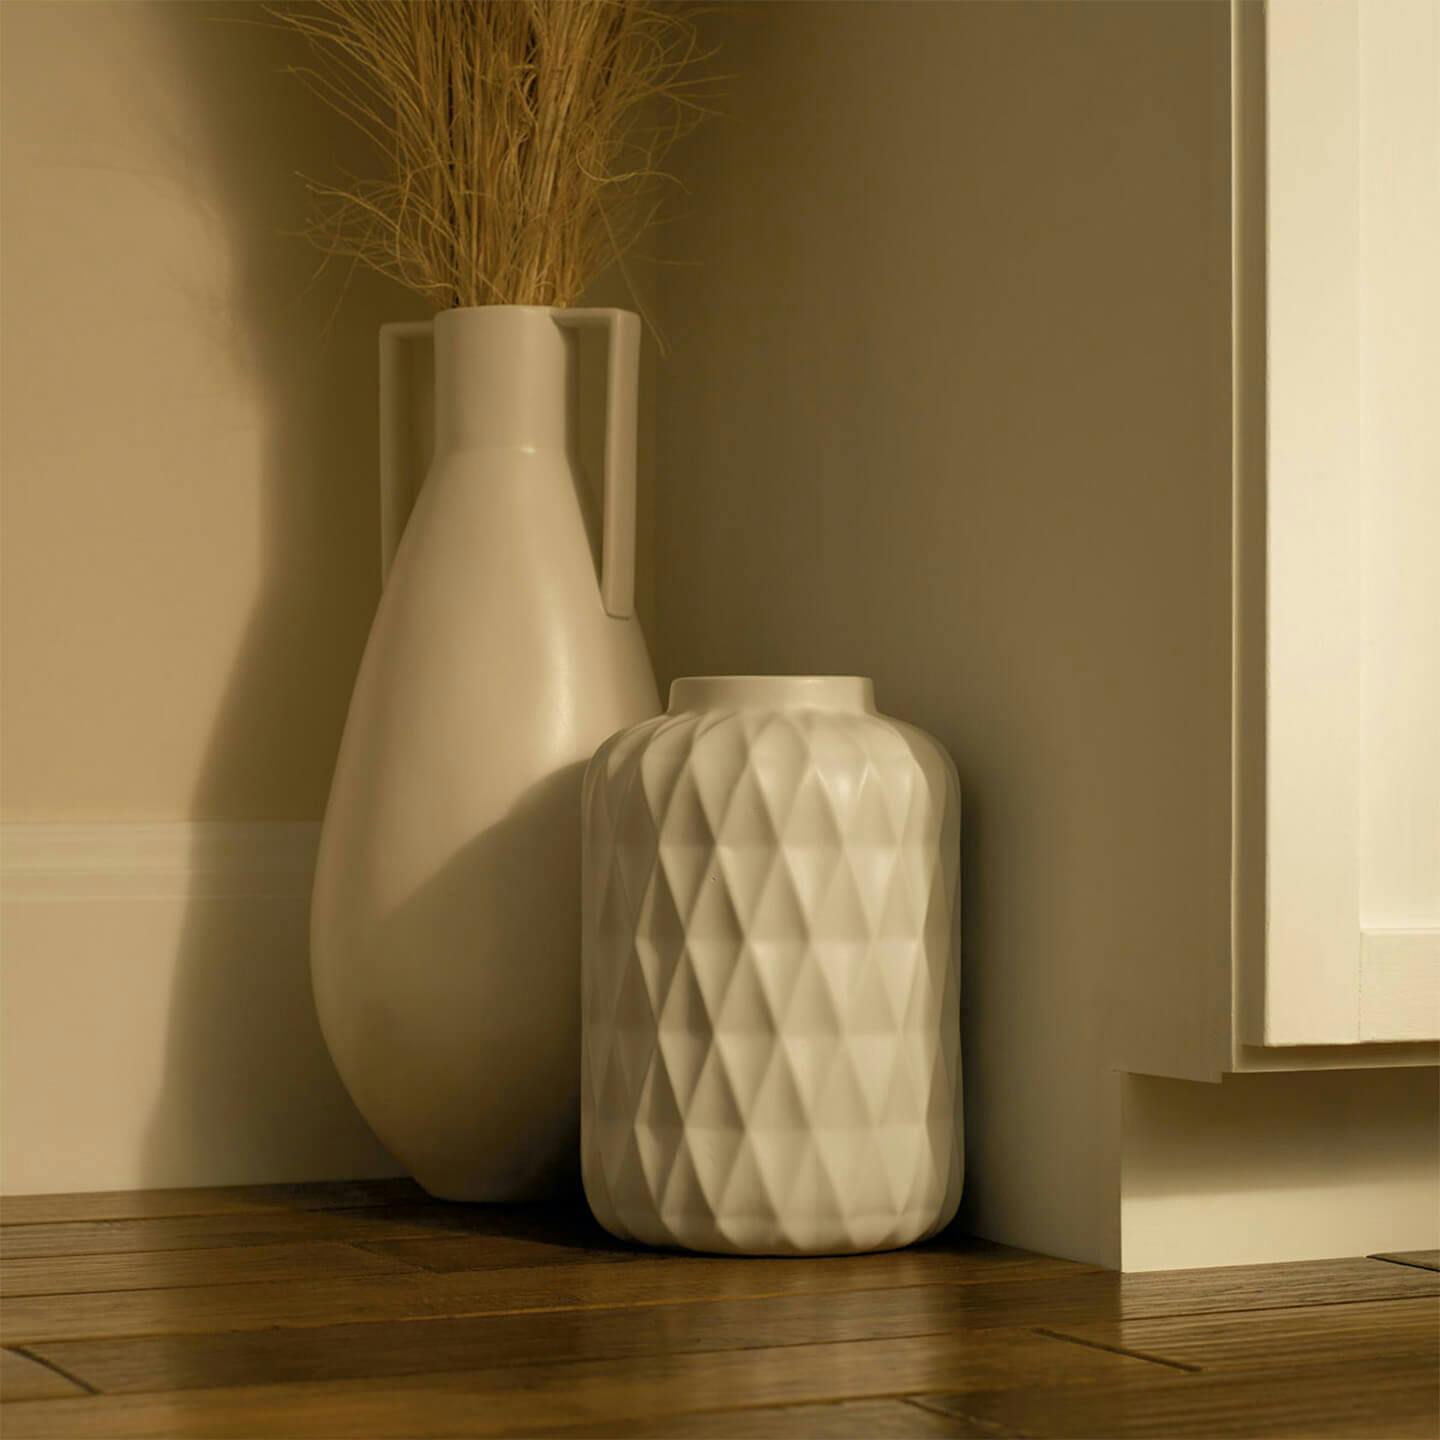 Vases in Extra Warm White light, 2400 K